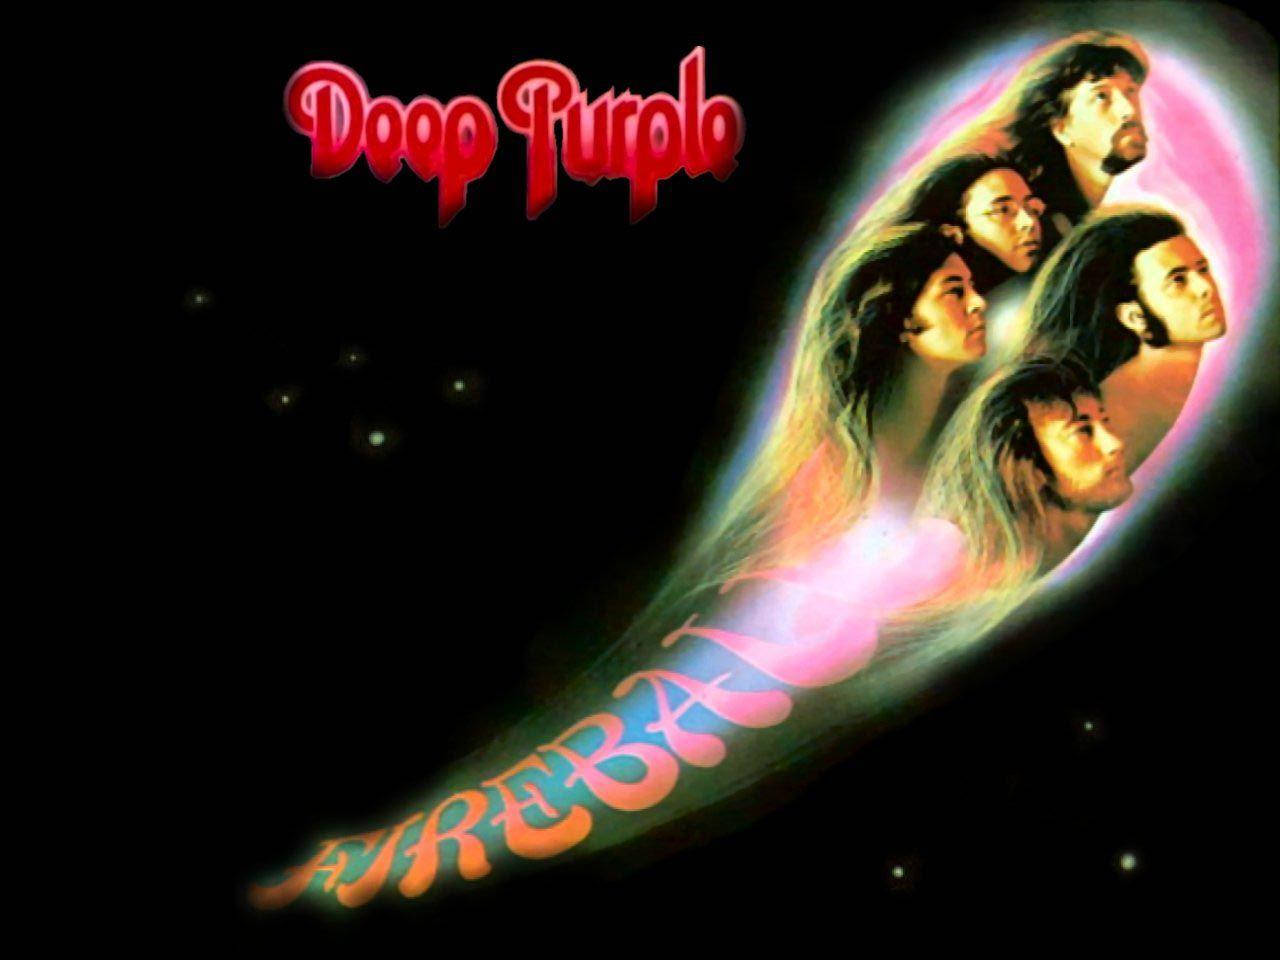 Brittisktpsykedeliskt Rockband Deep Purples Albumomslag För Fireball. Wallpaper